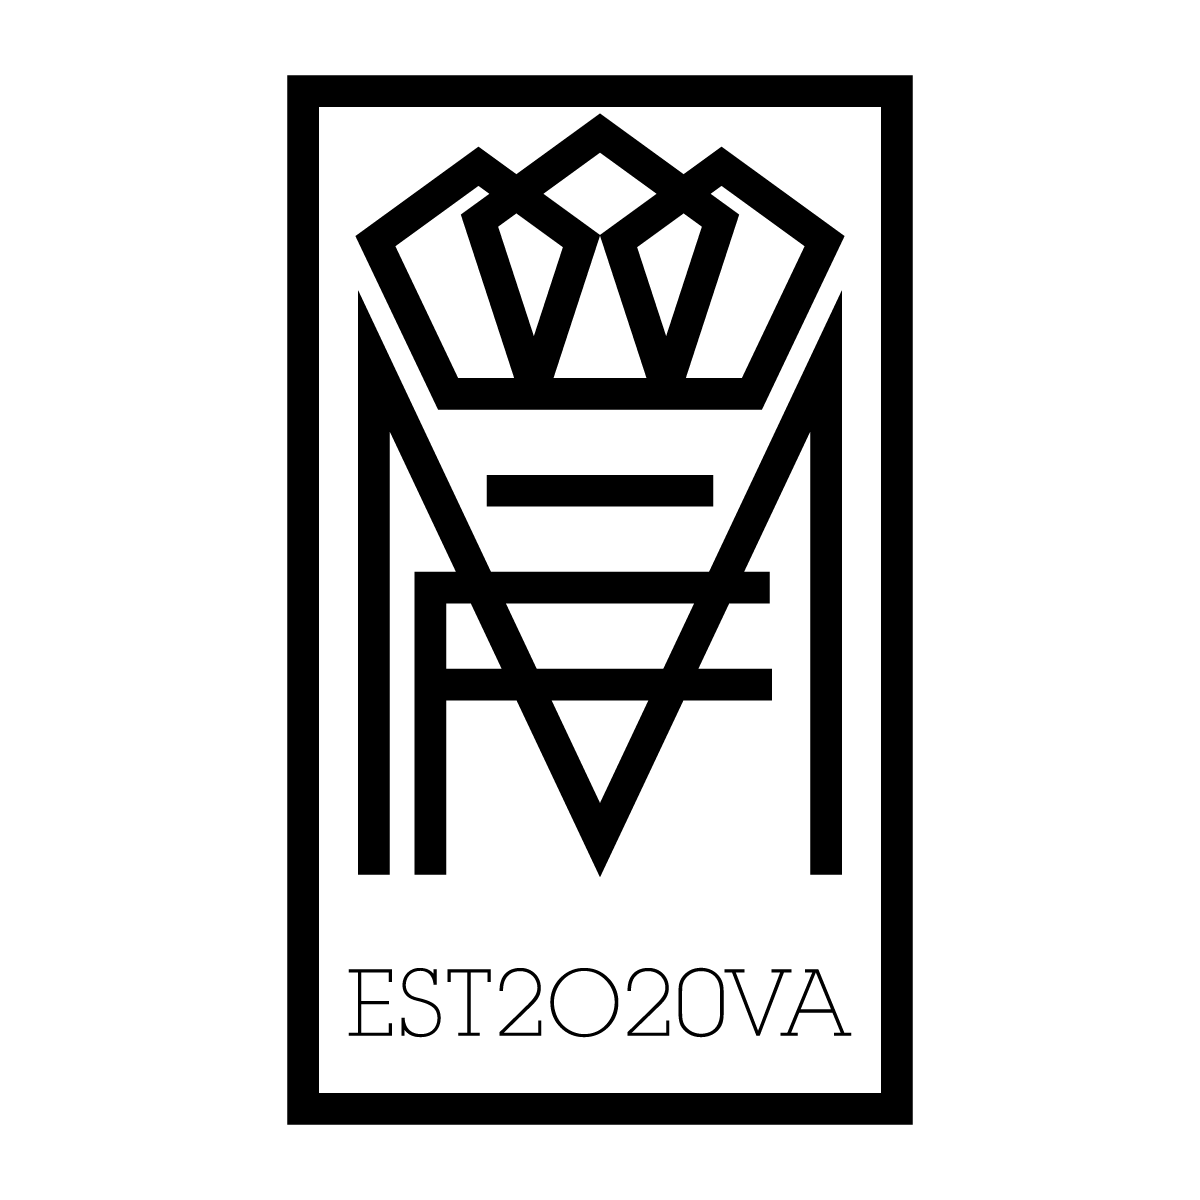 Mair Fior logo